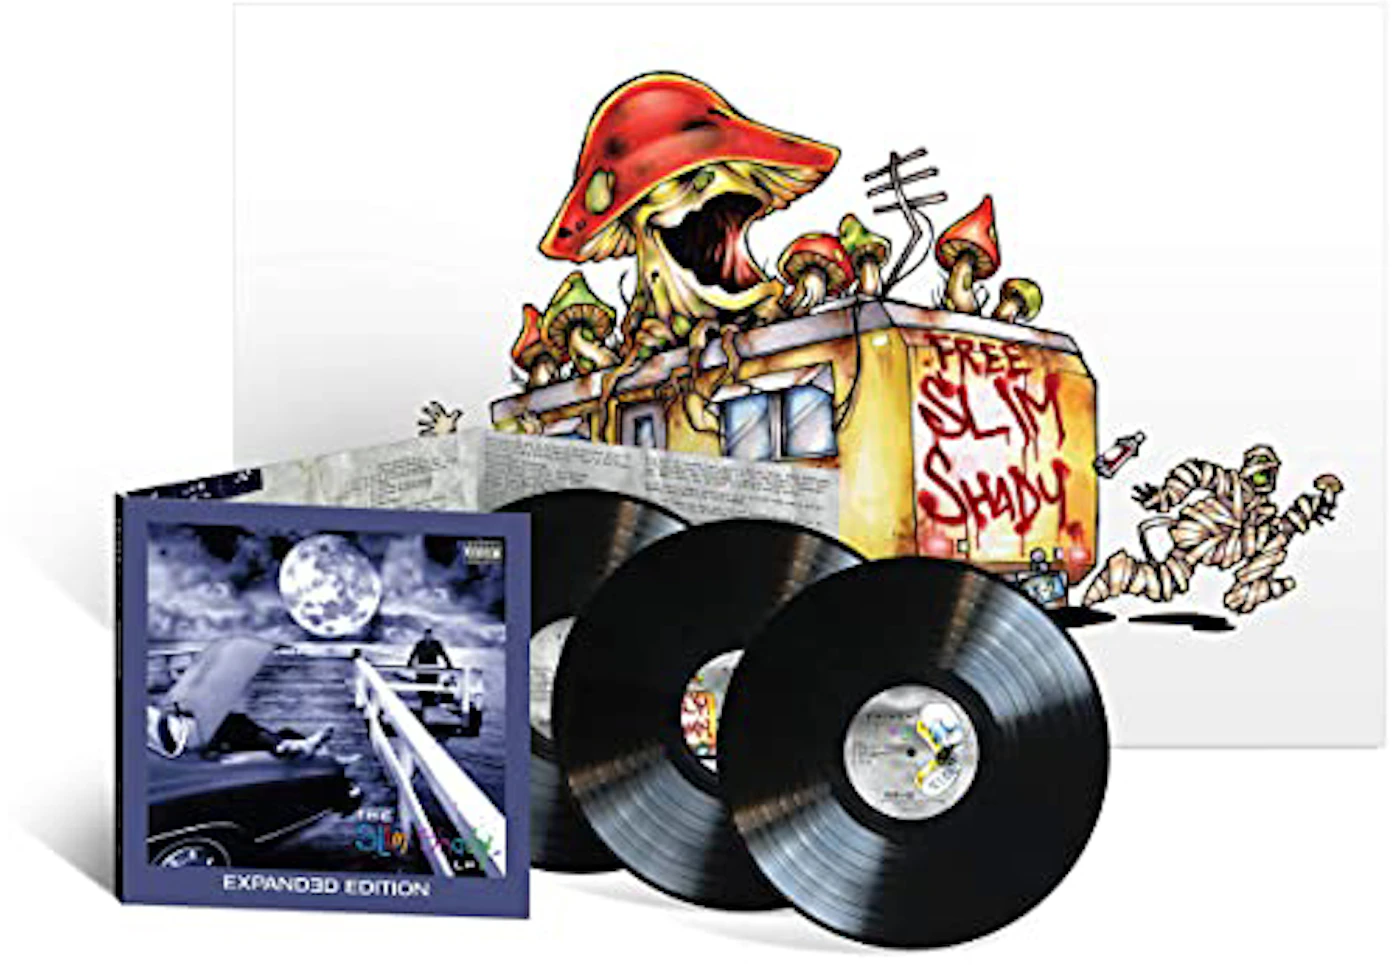 eminem - the eminem show 2xlp album vinilo us r - Buy LP vinyl records of  Rap and Hip Hop Music on todocoleccion